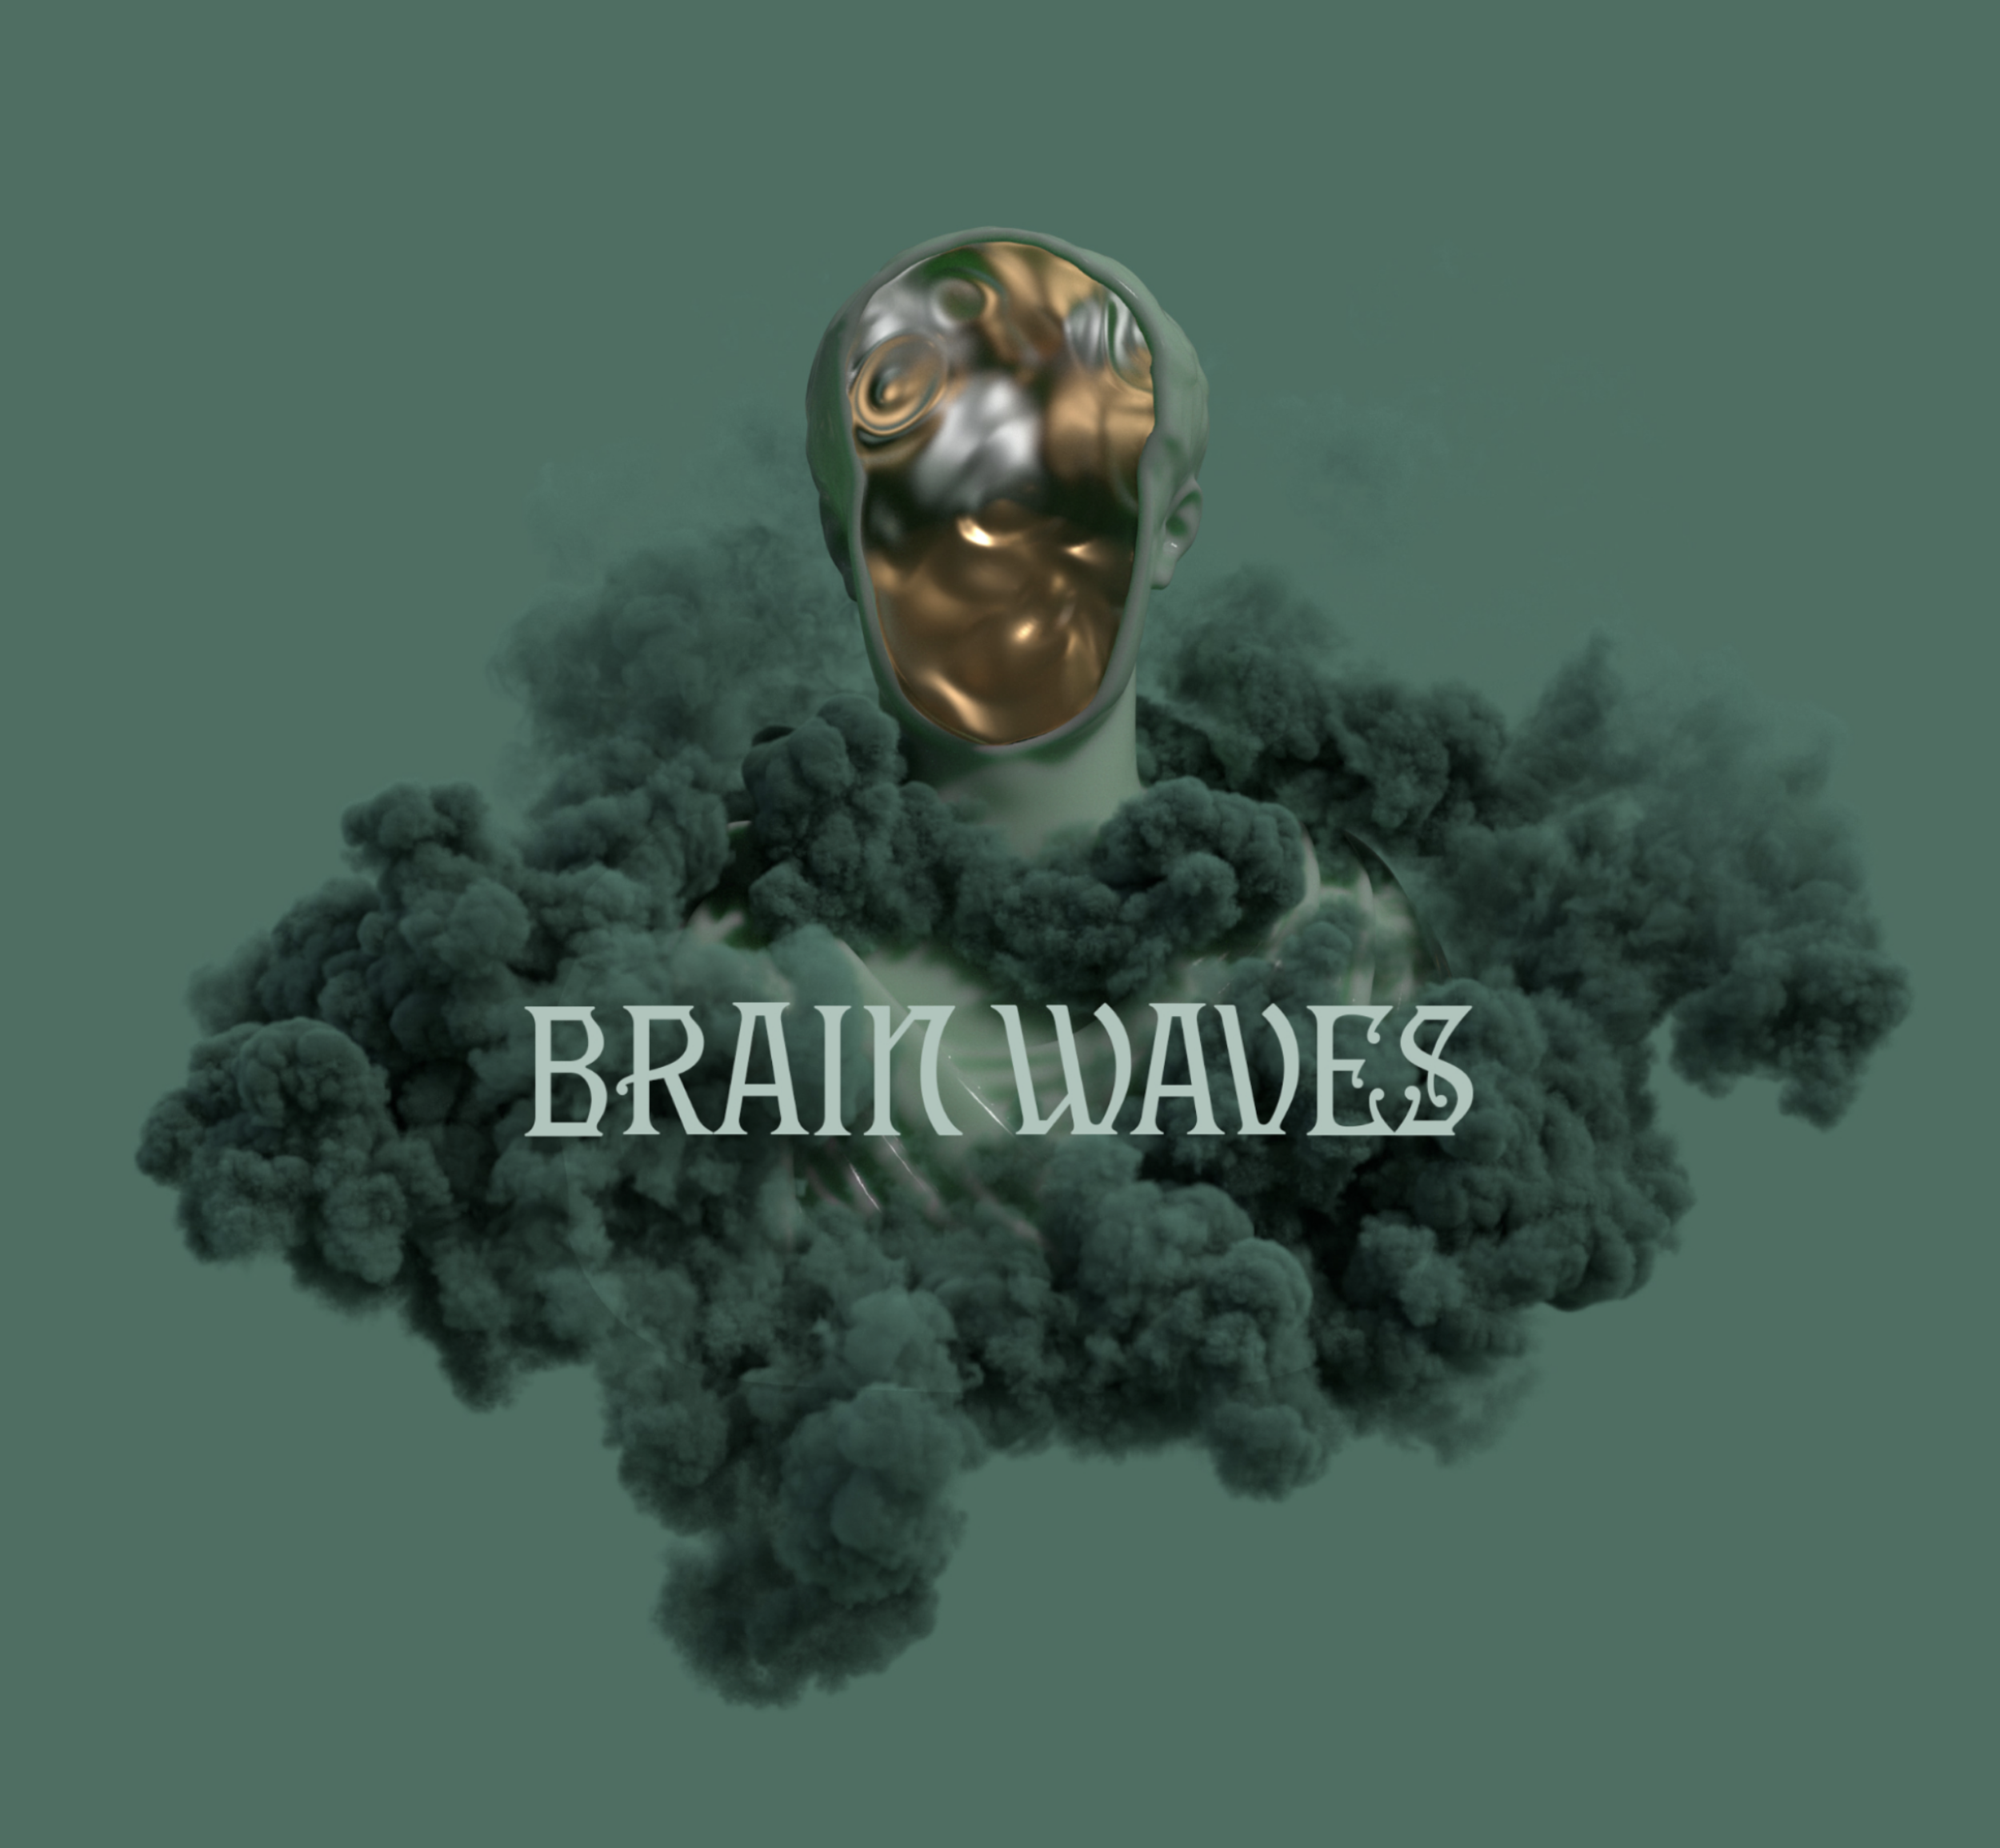 Arcade "Brainwaves" - Producer